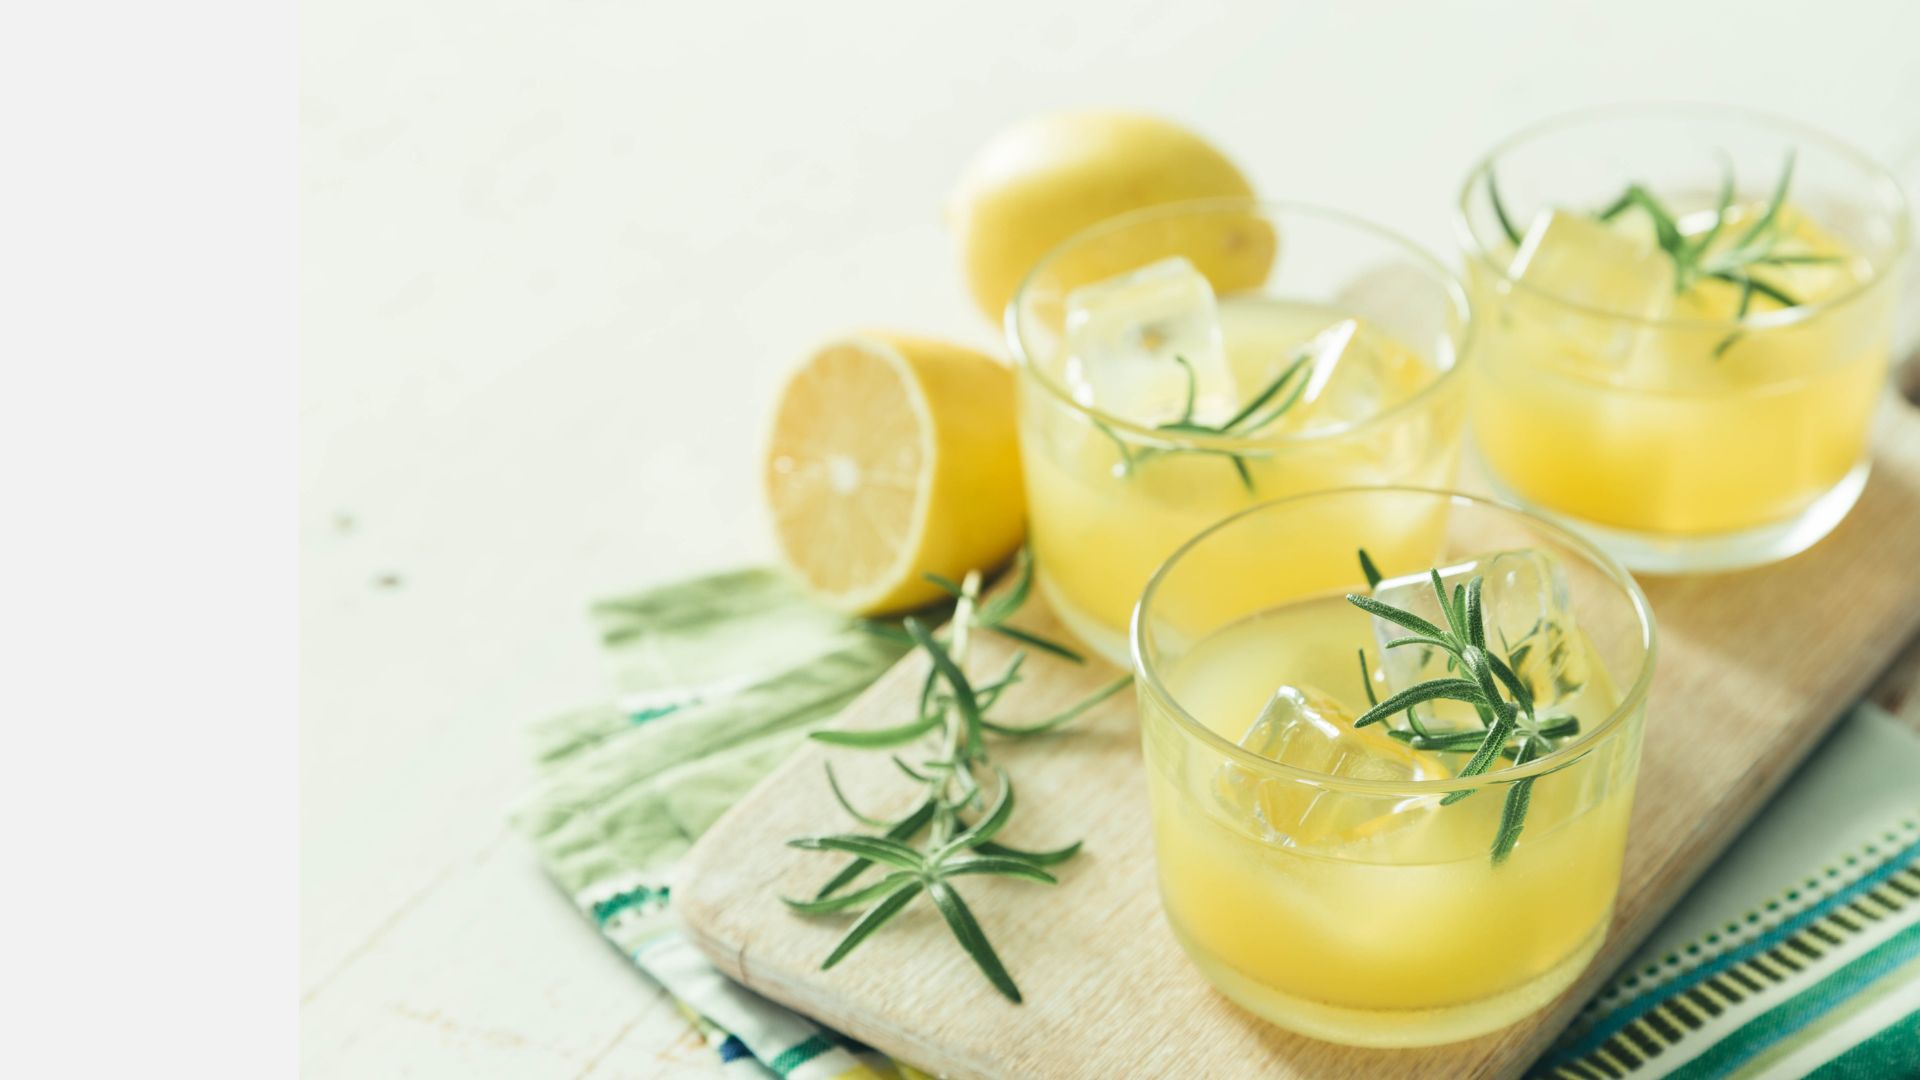 Régime détox 3 jours 3 kilos _ la solution miracle _ - Cure de jus de citron